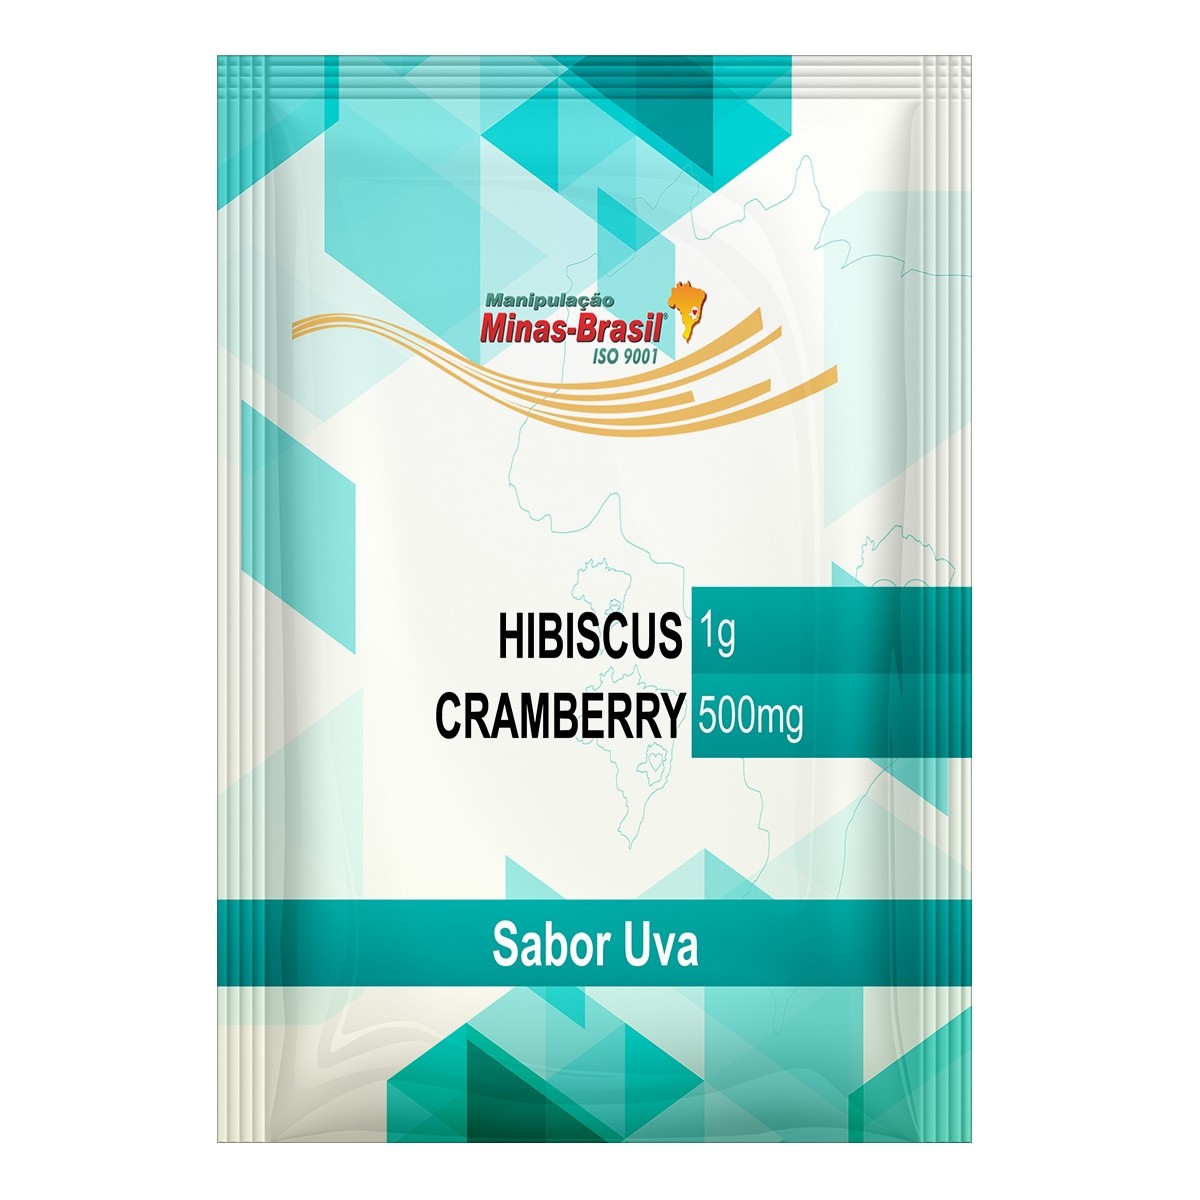 Comprar Chá Antioxidante Com Hibiscus e Cramberry Sabor Uva